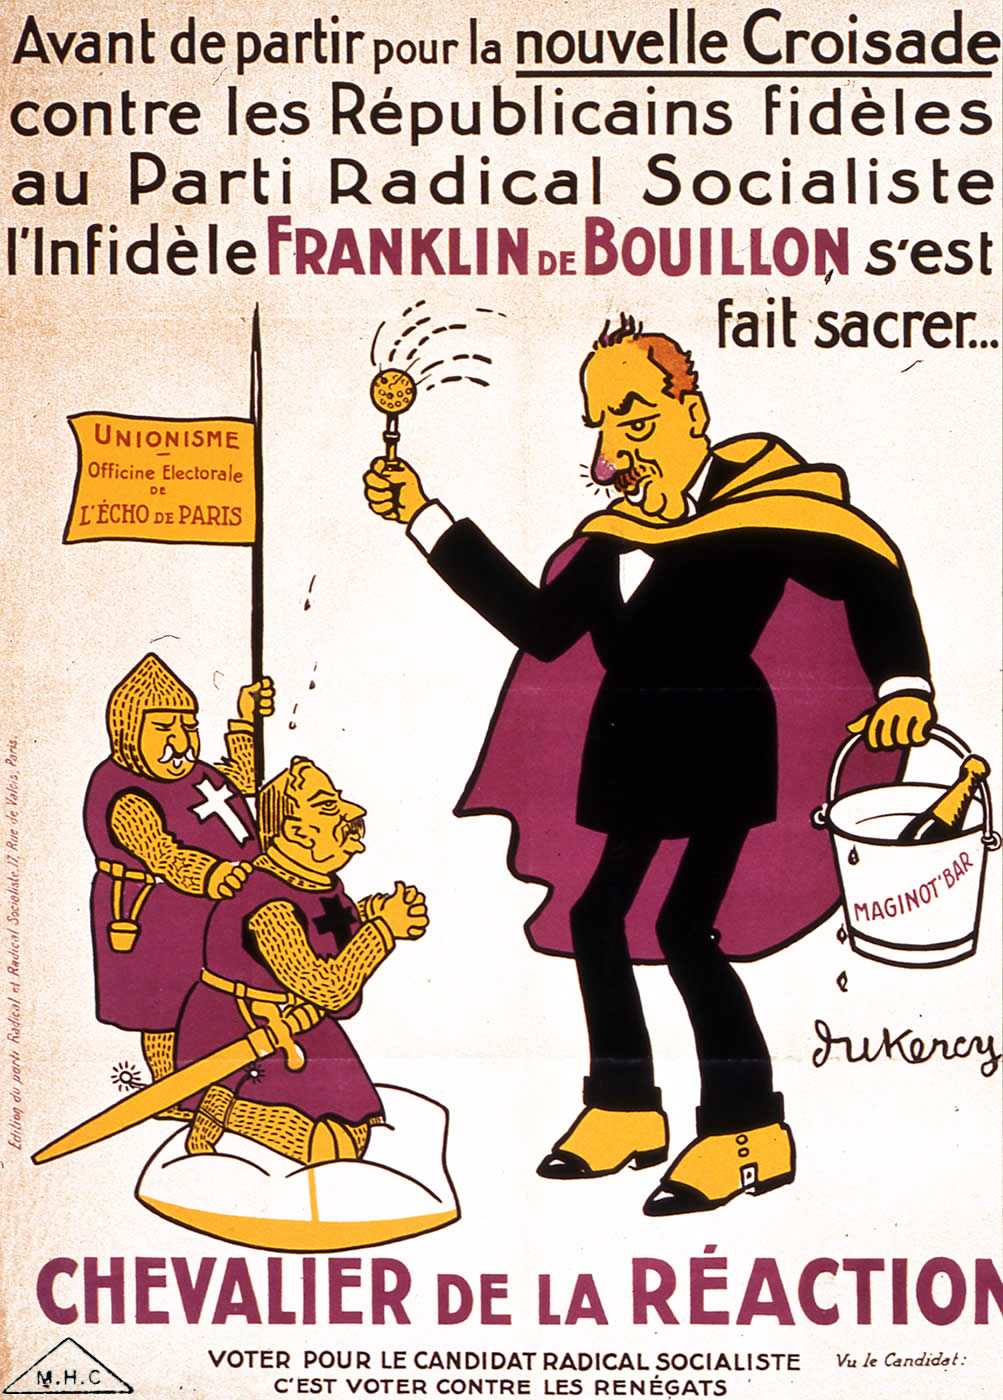 Franklin de Bouillon, Chevalier de la réaction.